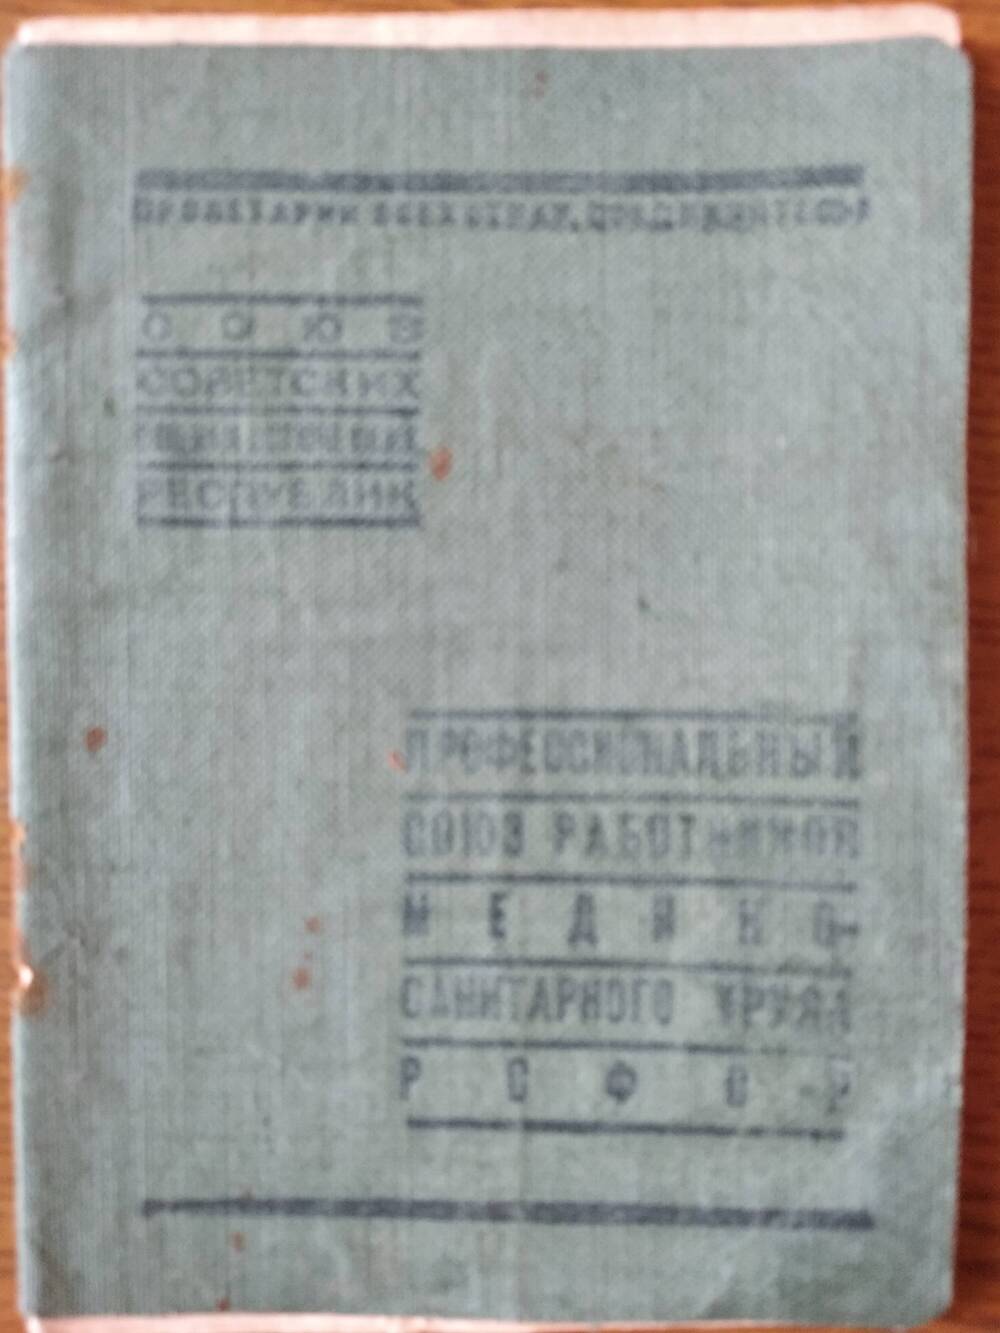 Членский билет № 1564748 Борисова Александра Ивановича – столяр.. 31 марта 1941 г.